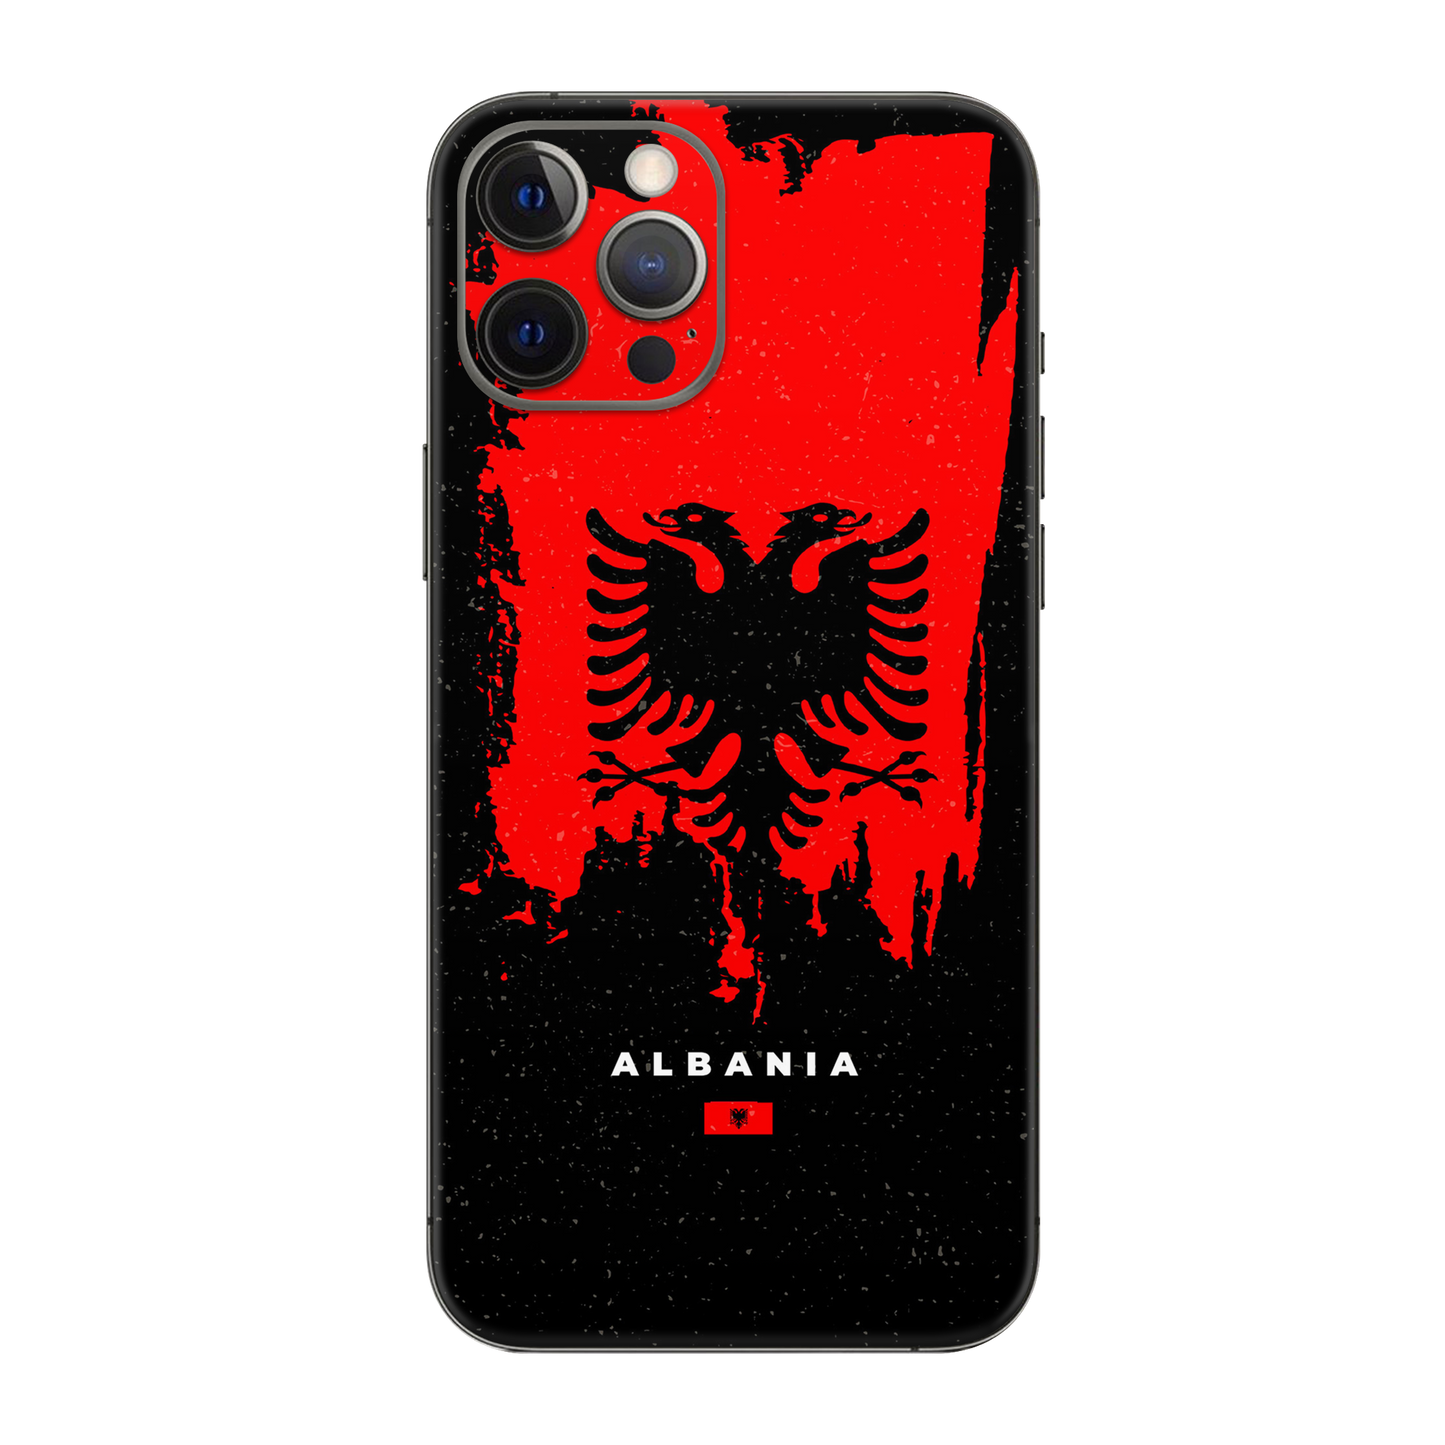 Backside Skin Albanien - Für alle Smartphones bis 7 Zoll